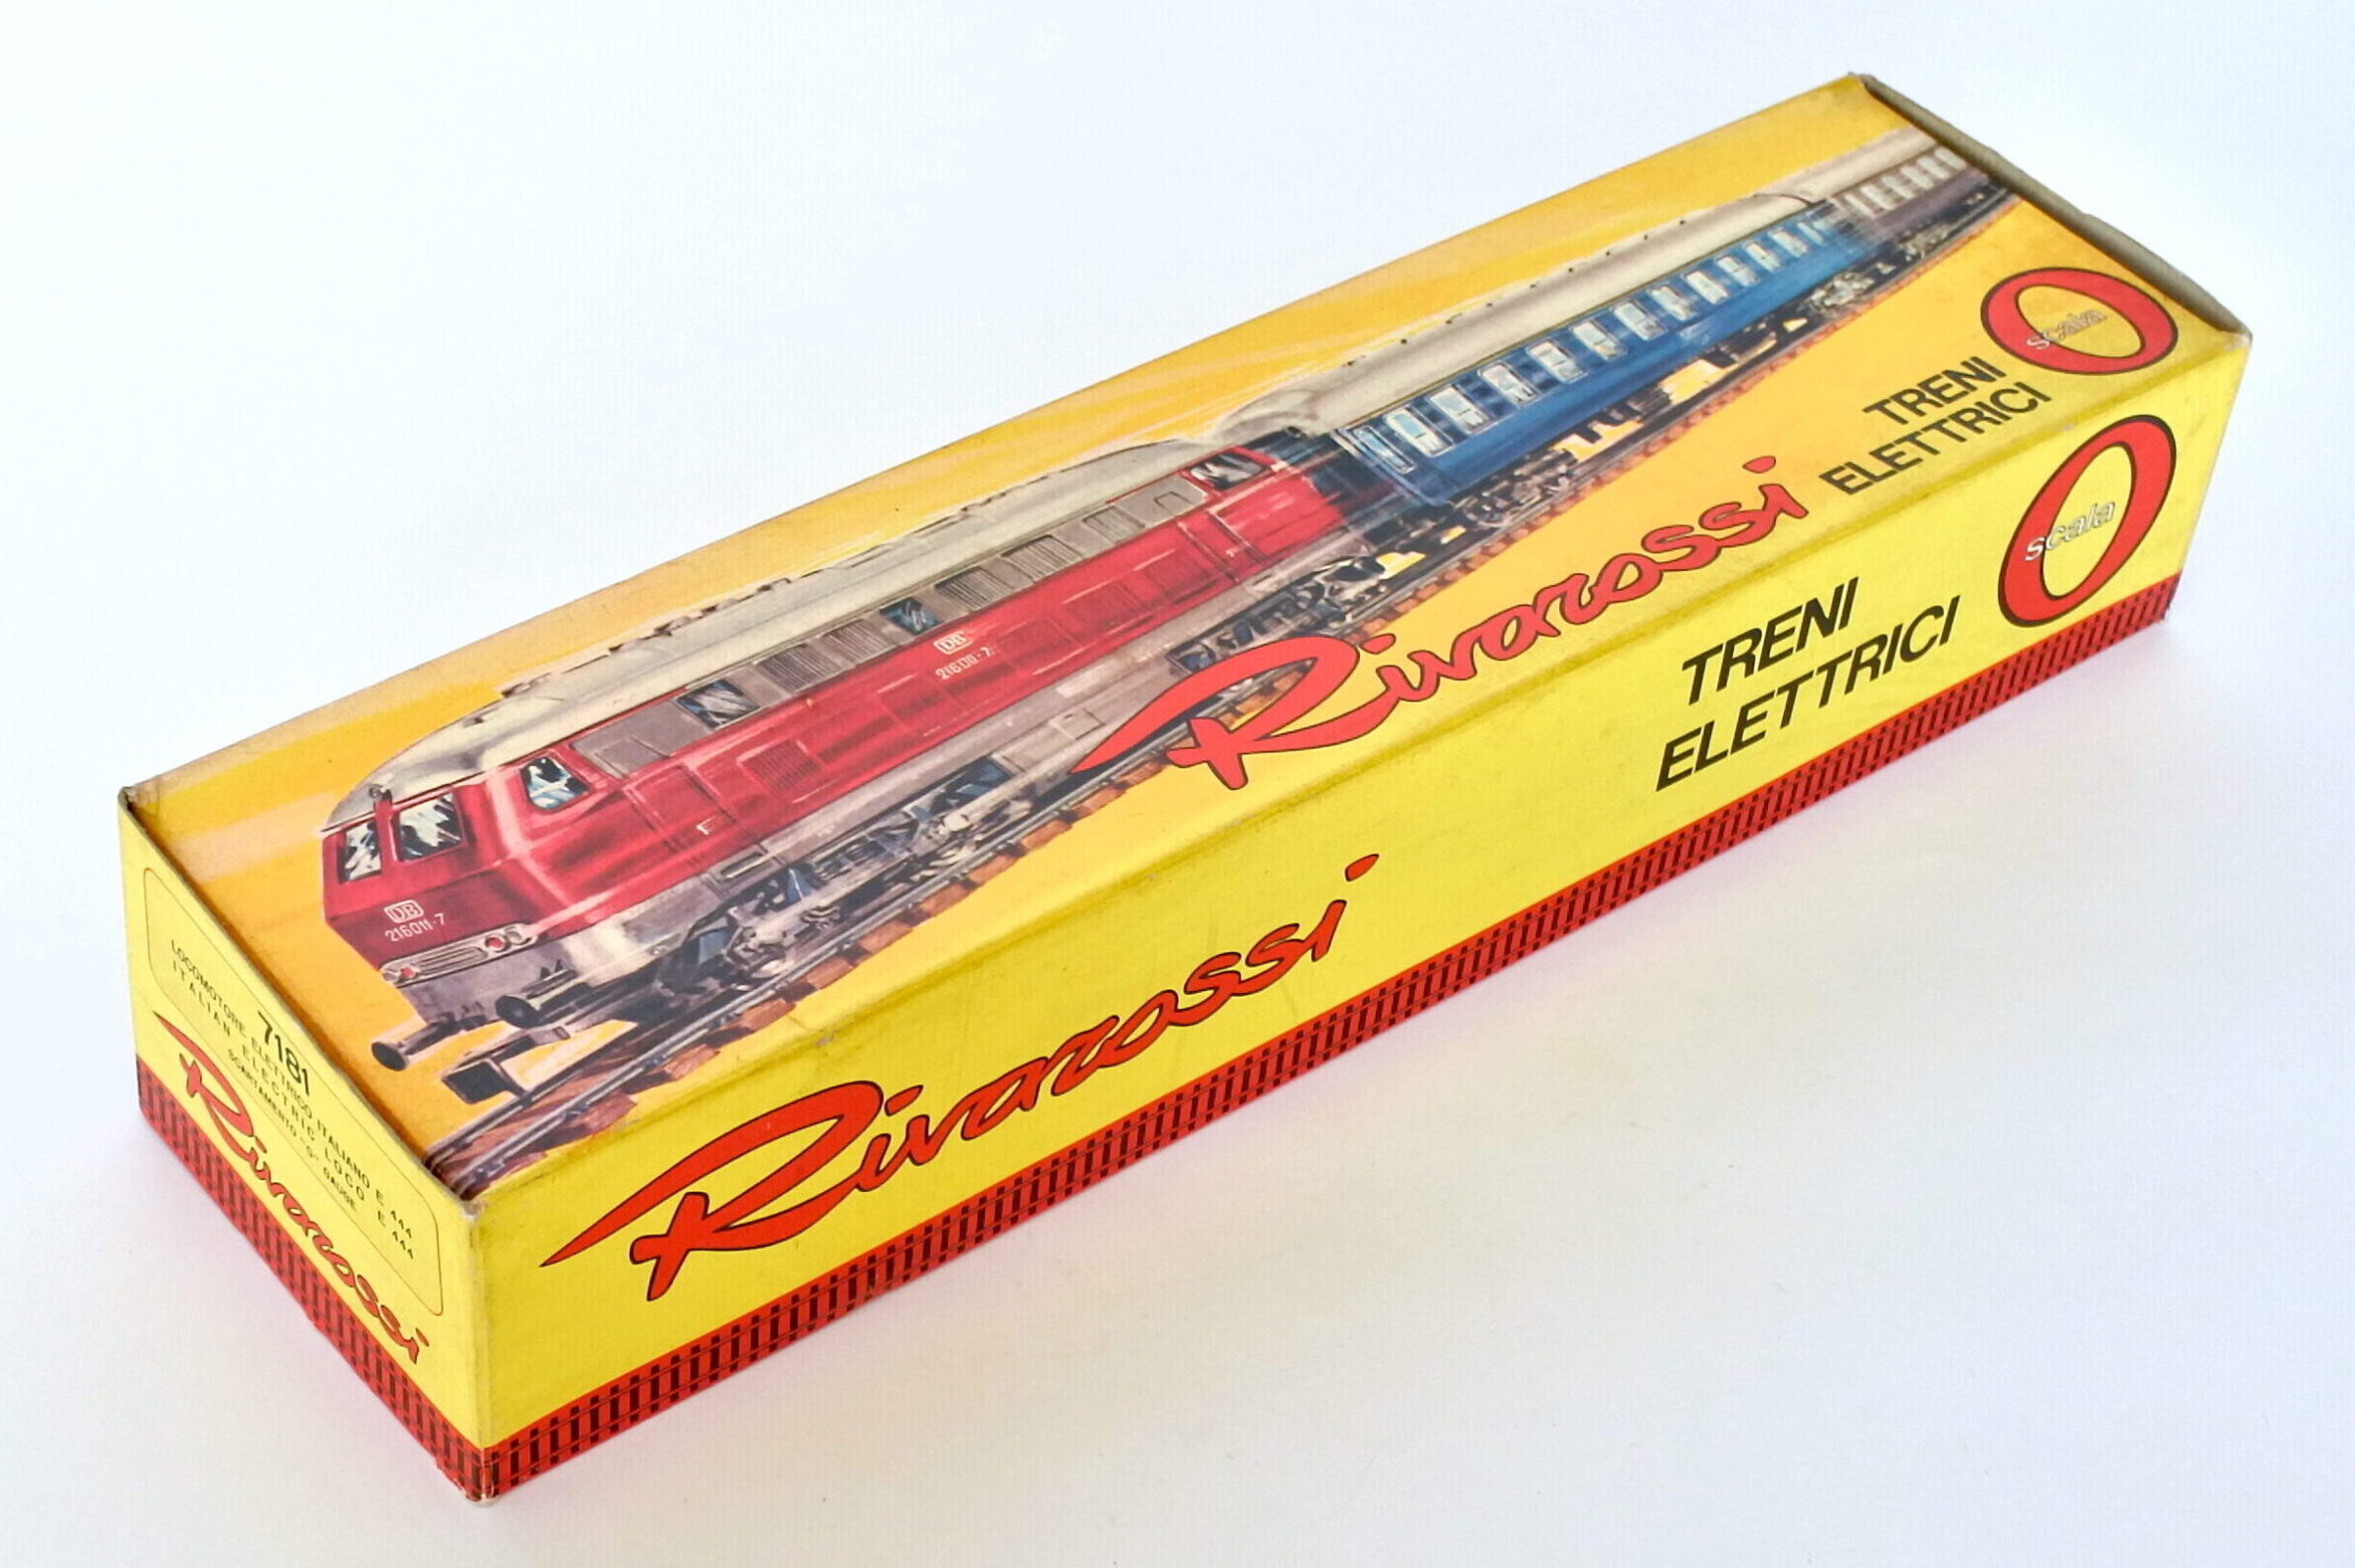 Locomotiva elettrica Rivarossi tartaruga E 444 015 FS scala 0 con scatola - 10